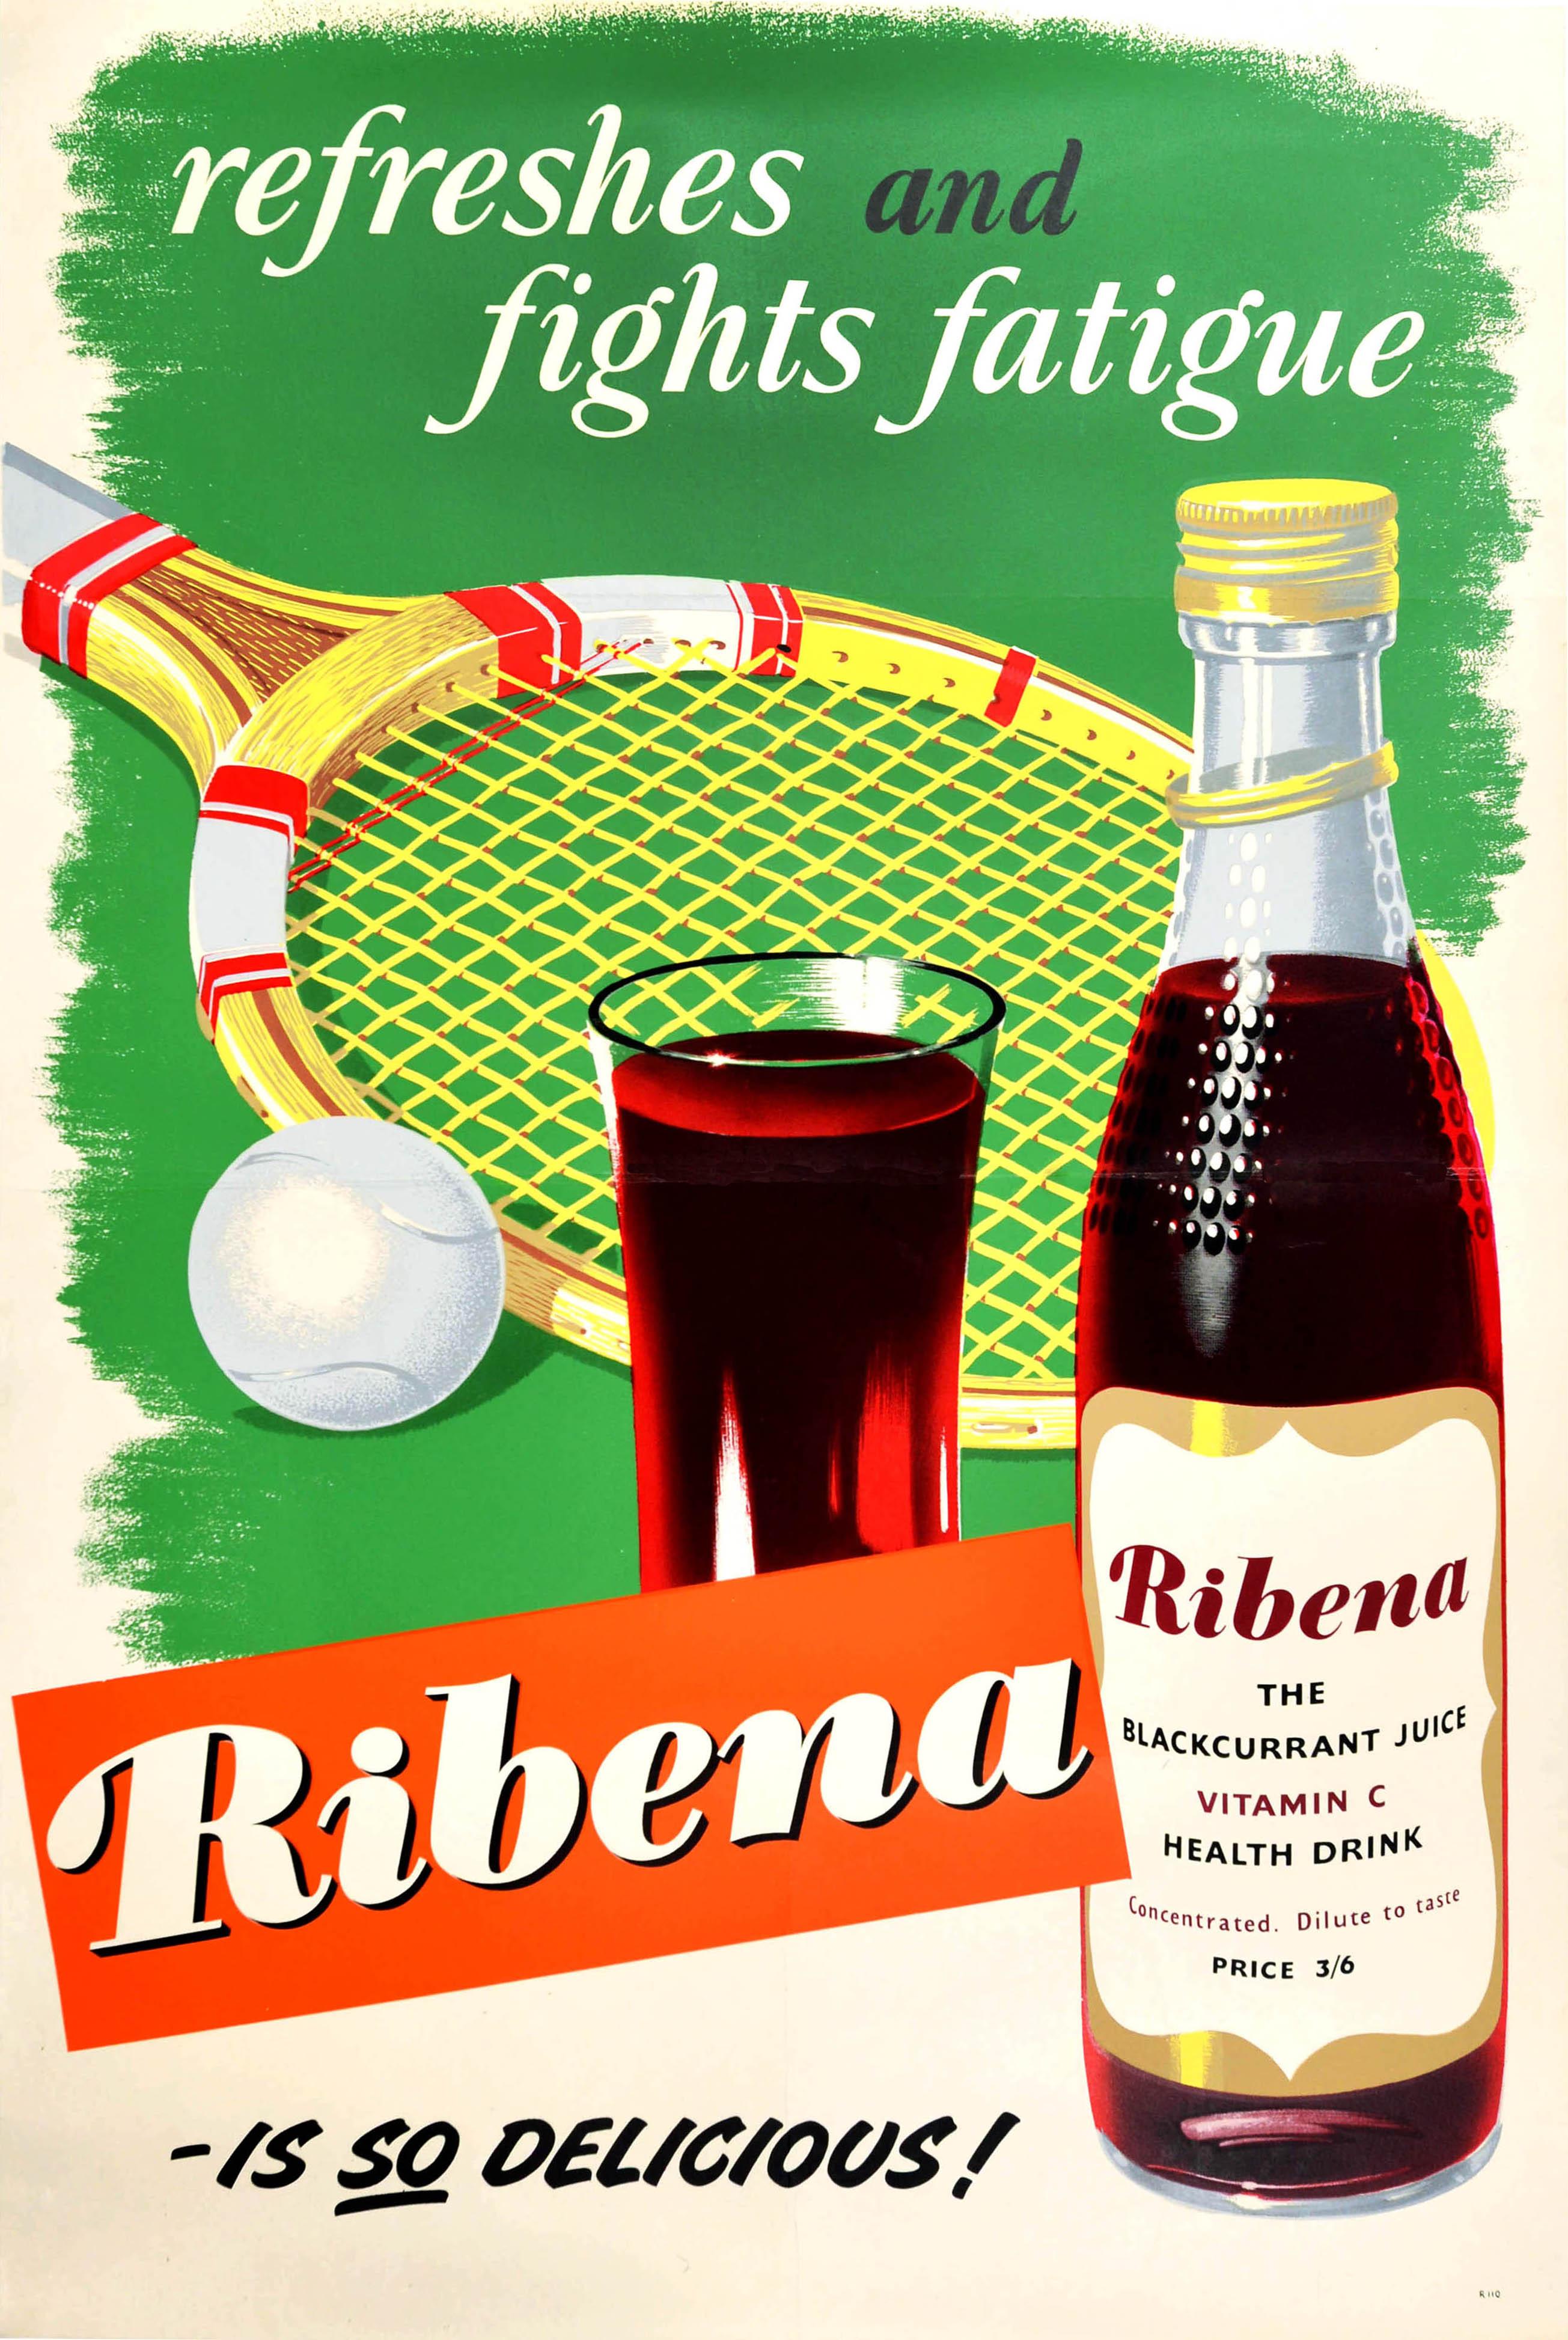 Print Unknown - Affiche rétro originale pour la boisson pour Ribena Refreshes, Fights Fatigue, Tennis d'été